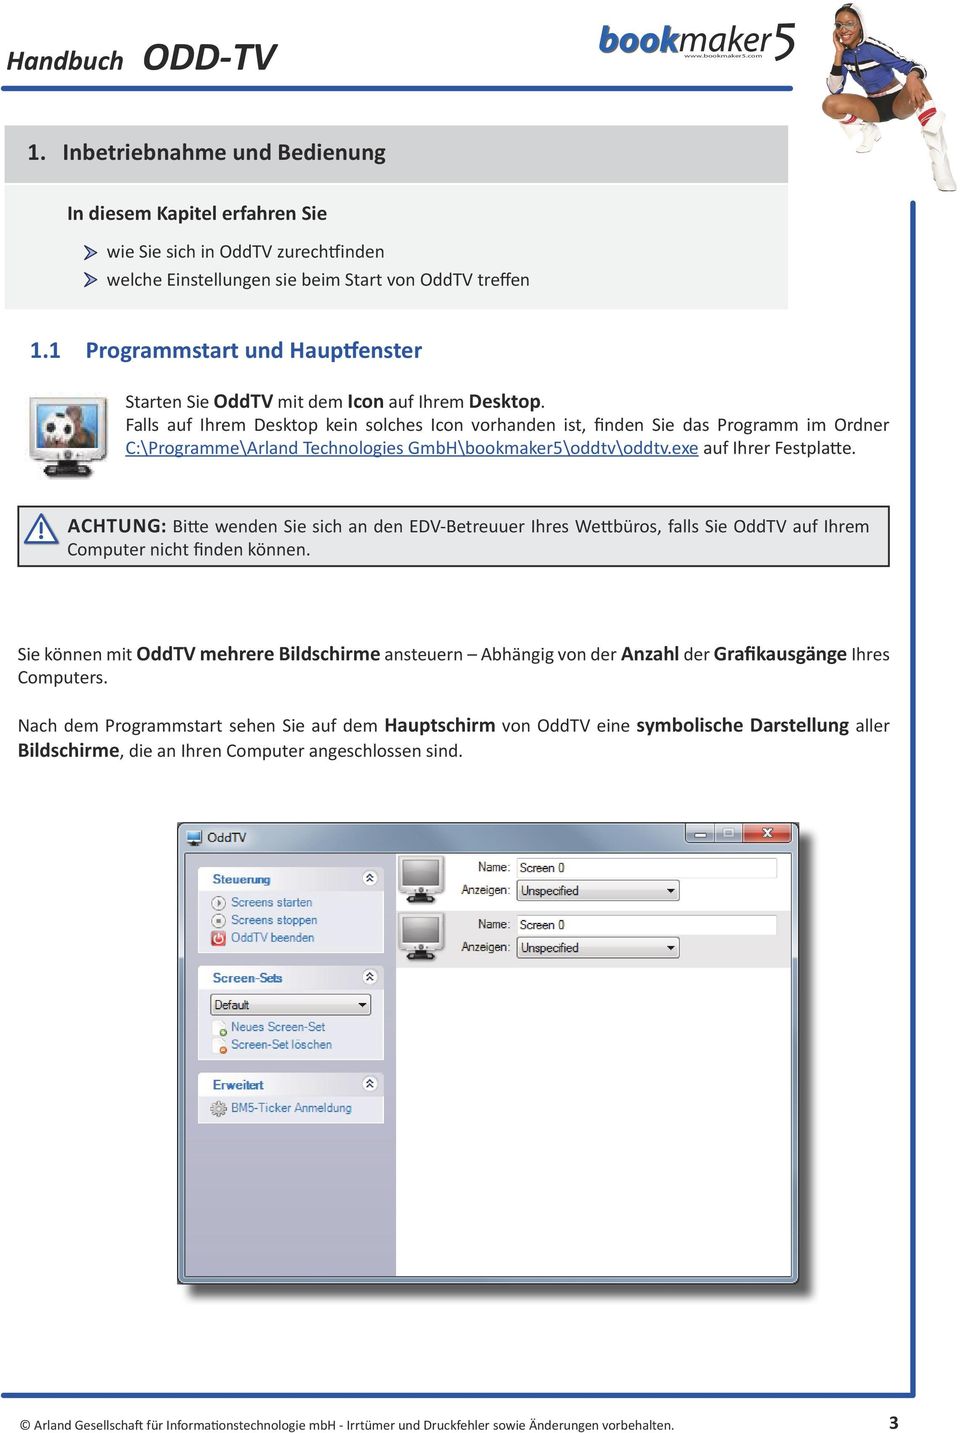 Falls auf Ihrem Desktop kein solches Icon vorhanden ist, finden Sie das Programm im Ordner C:\Programme\Arland Technologies GmbH\bookmaker5\oddtv\oddtv.exe auf Ihrer Festplatte.